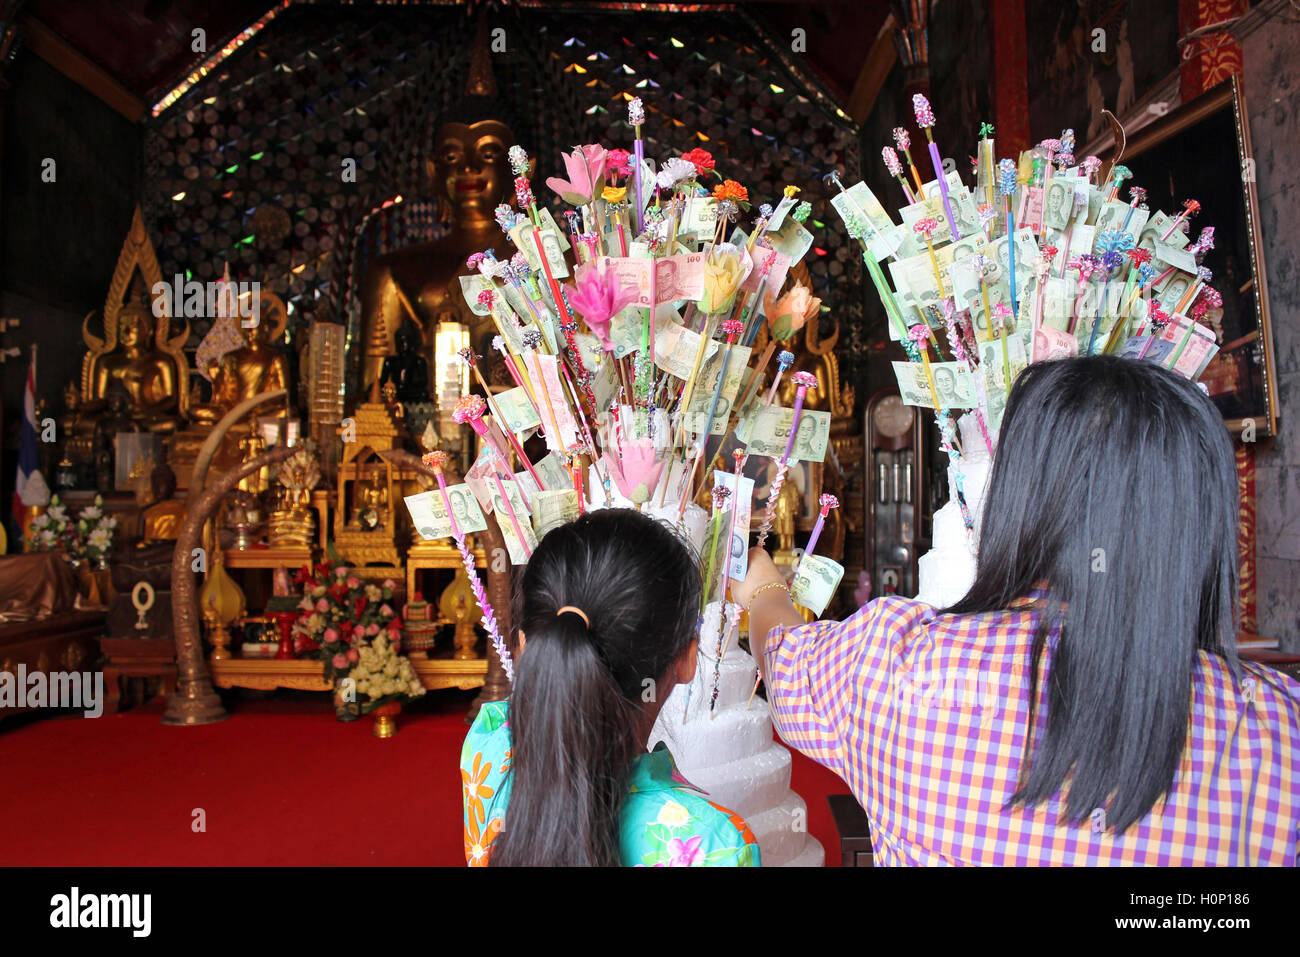 Le erogazioni liberali in denaro effettuate a un tempio in Thailandia Foto Stock